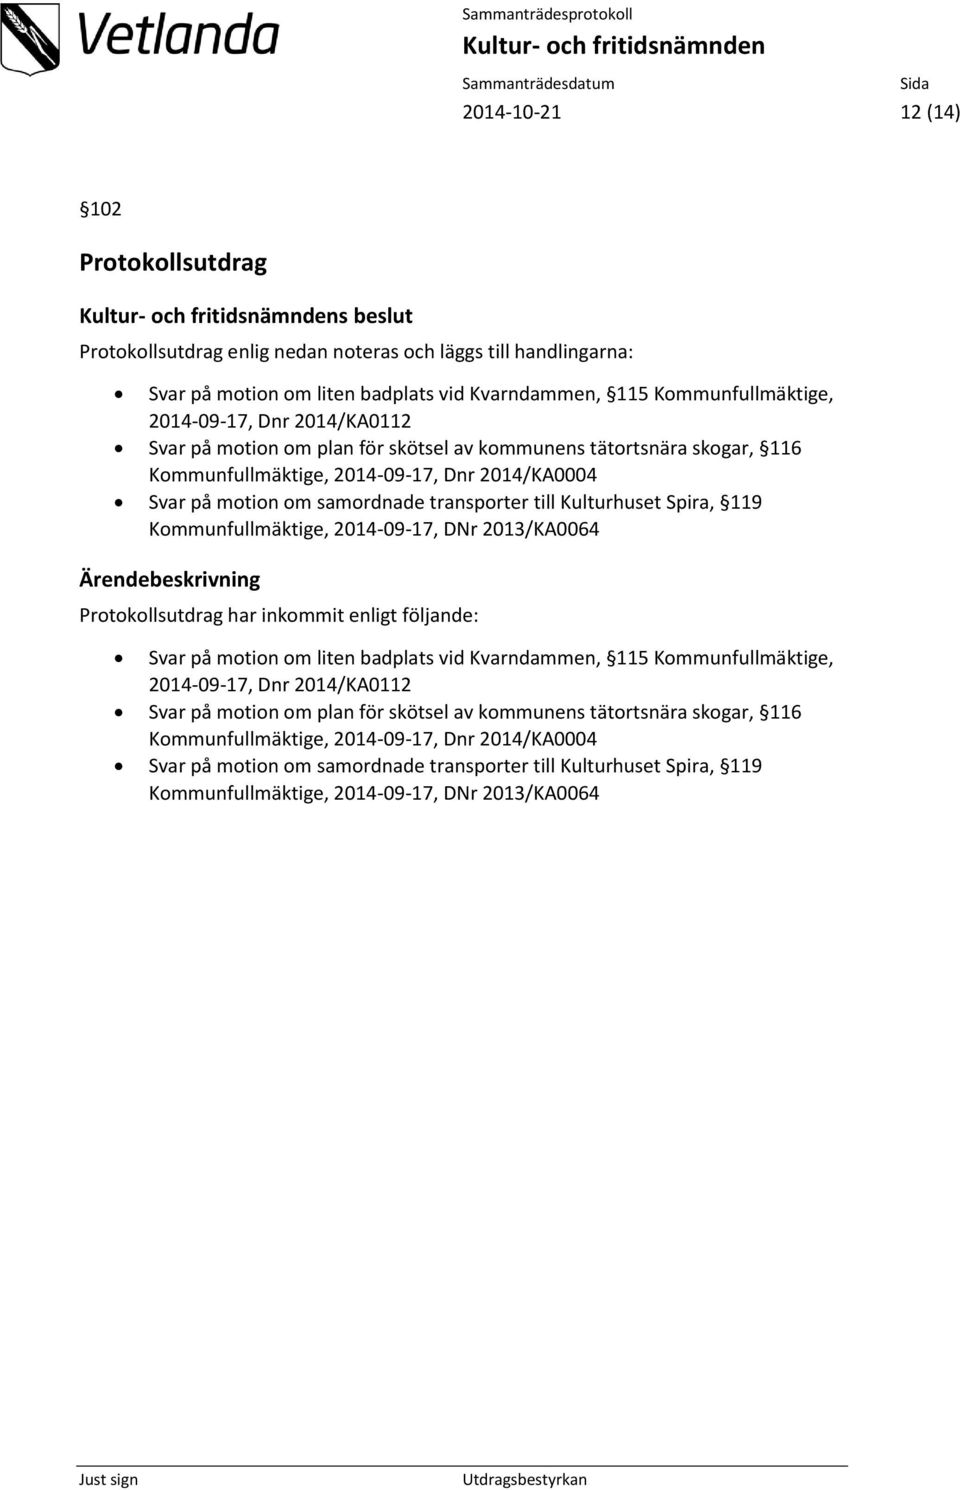 119 Kommunfullmäktige, 2014-09-17, DNr 2013/KA0064 Protokollsutdrag har inkommit enligt följande: Svar på motion om liten badplats vid Kvarndammen, 115 Kommunfullmäktige, 2014-09-17,  119